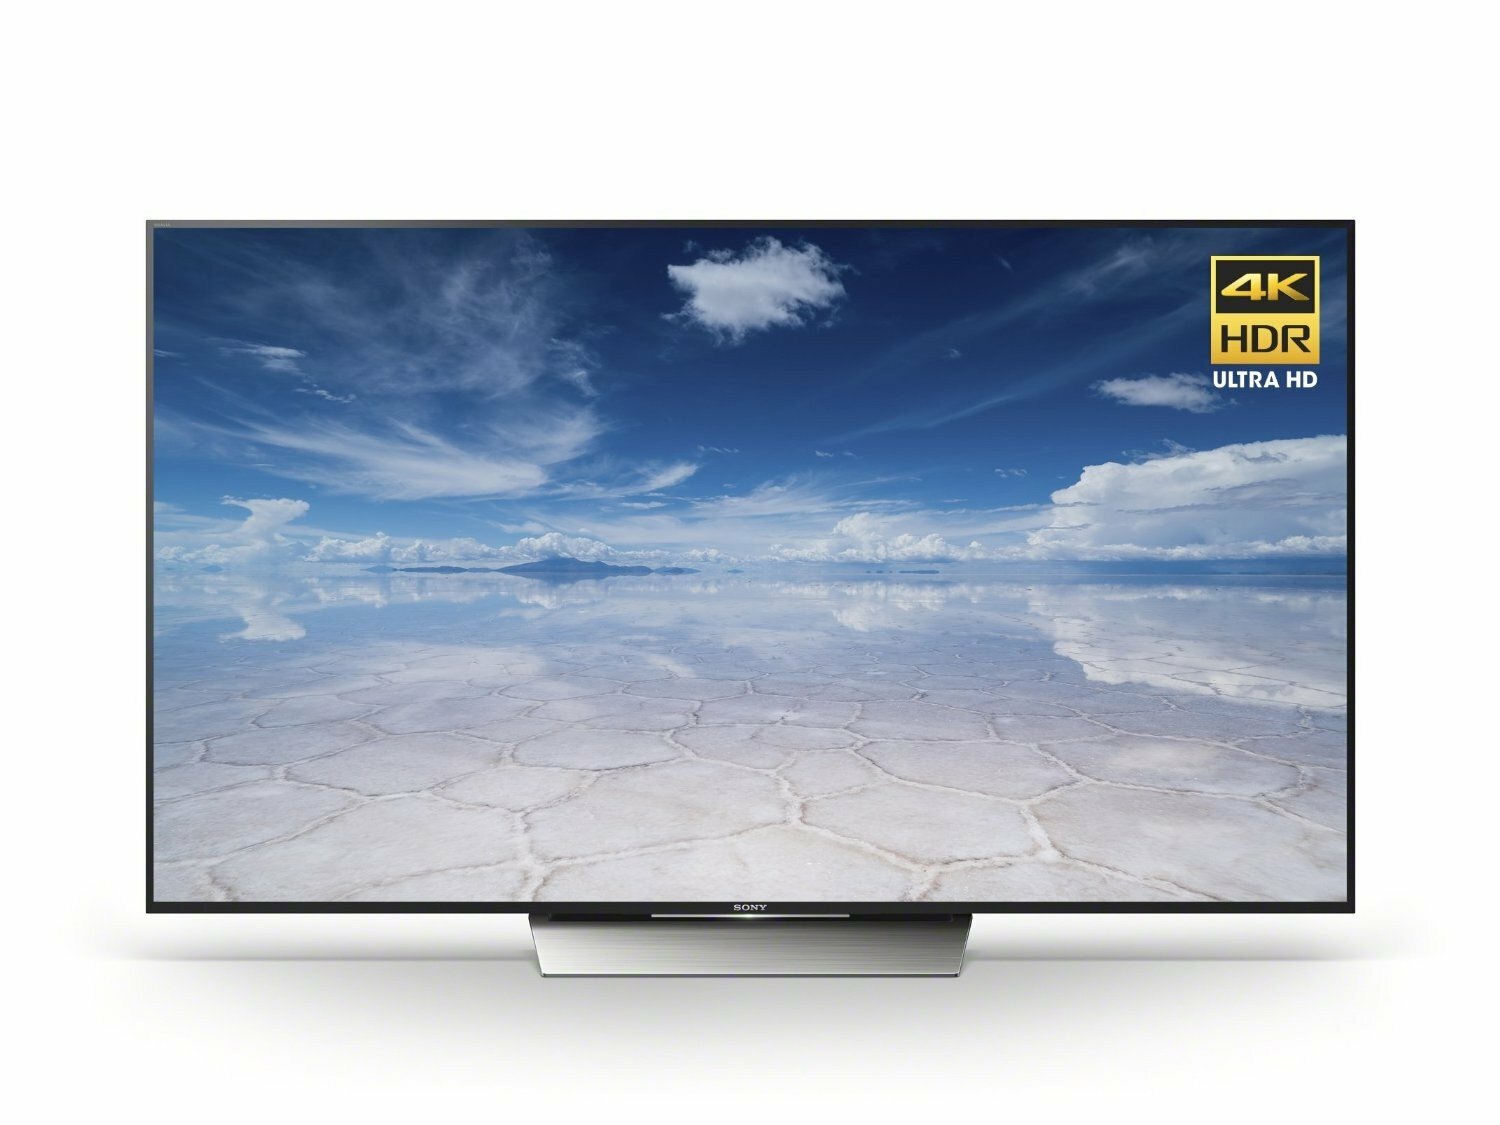 LED Flat screen Ultra HD TV